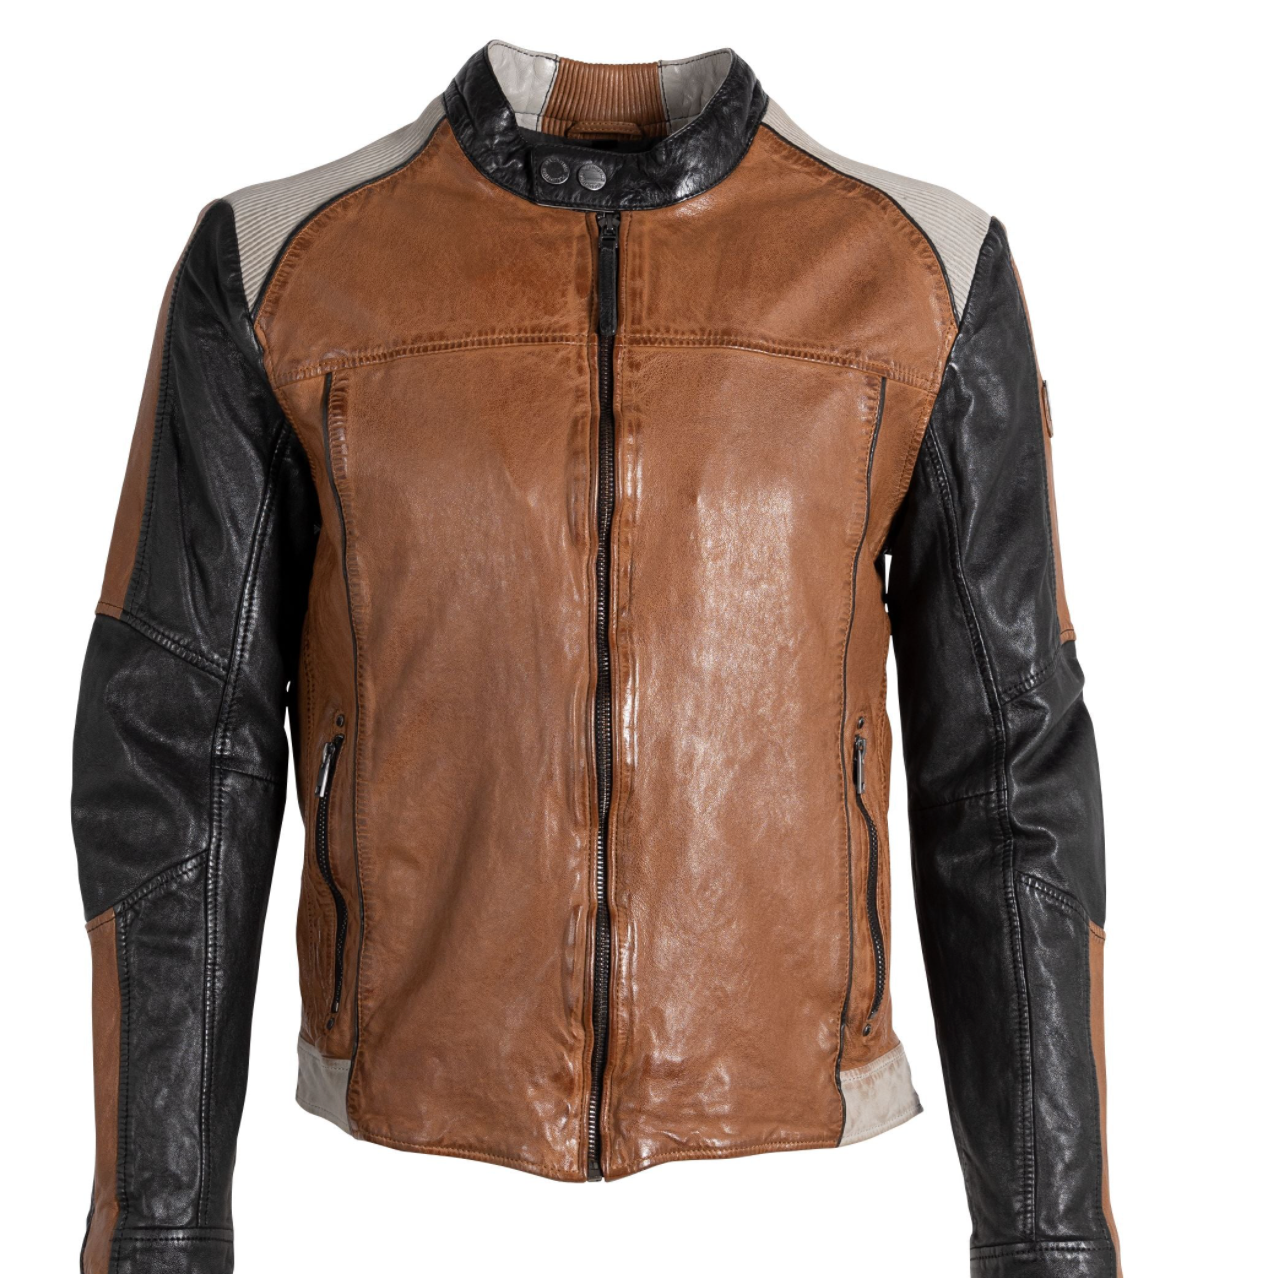 Mauritius Leather jacket. Men's moto-style leather jacket. Two-toned leather coat. Mackinac Island clothing store